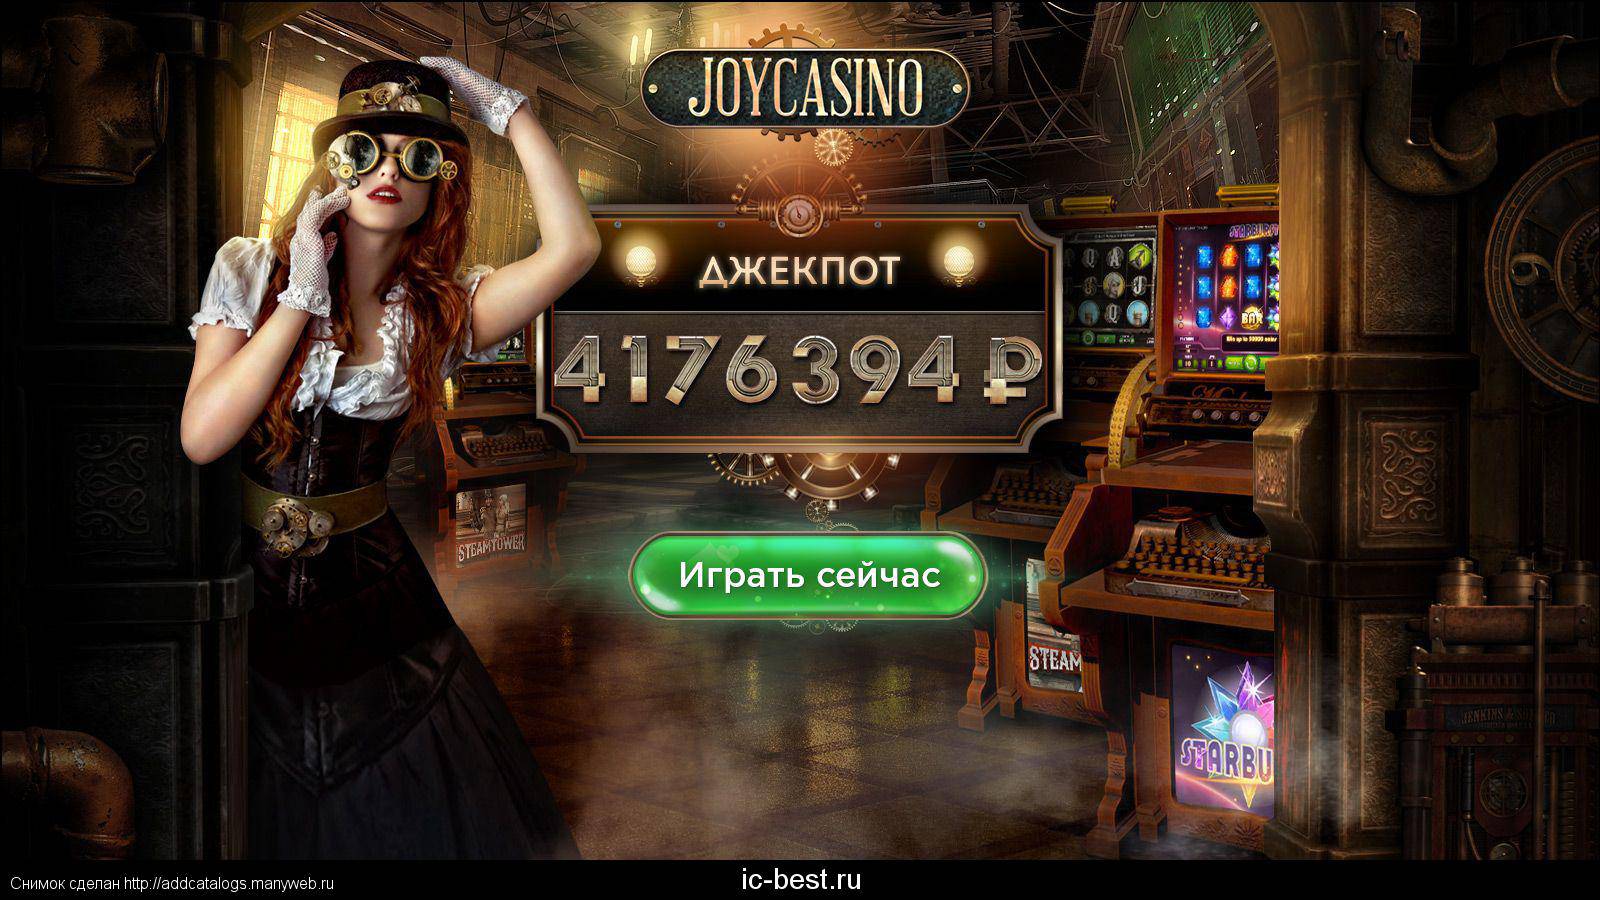 Каковы требования к ставкам в онлайн-казино Джойказино?